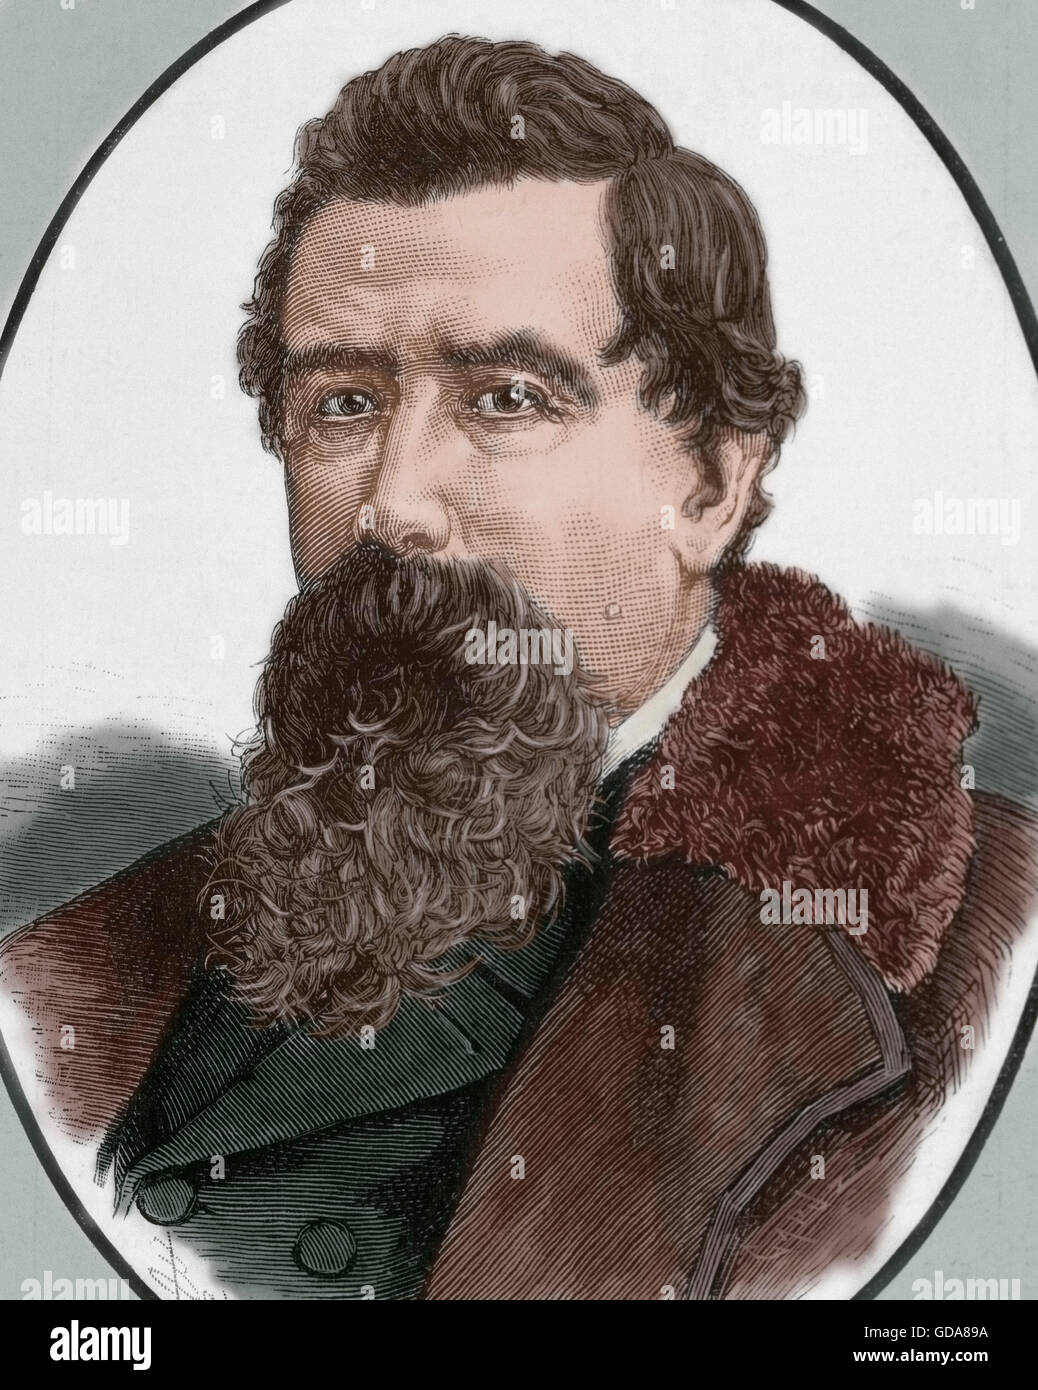 Amilcare Ponchielli (1834-1886). Italienischer Komponist. Porträt. Gravur. Farbige. Stockfoto